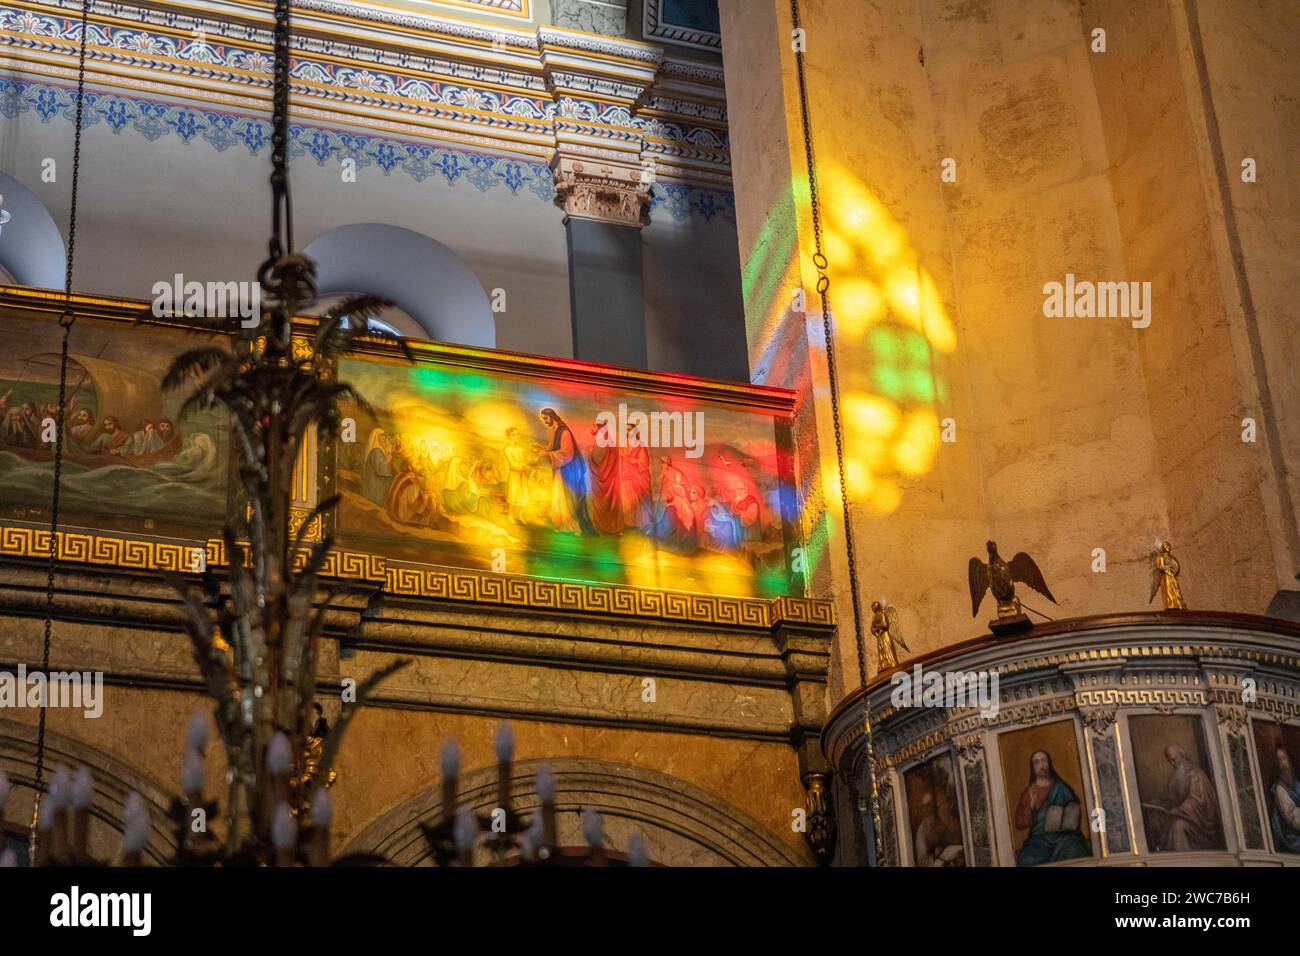 Les fresques et l'aspect architectural de l'intérieur de l'église orthodoxe grecque Hagia Triada située à Taksim, Istanbul, Turquie. Banque D'Images